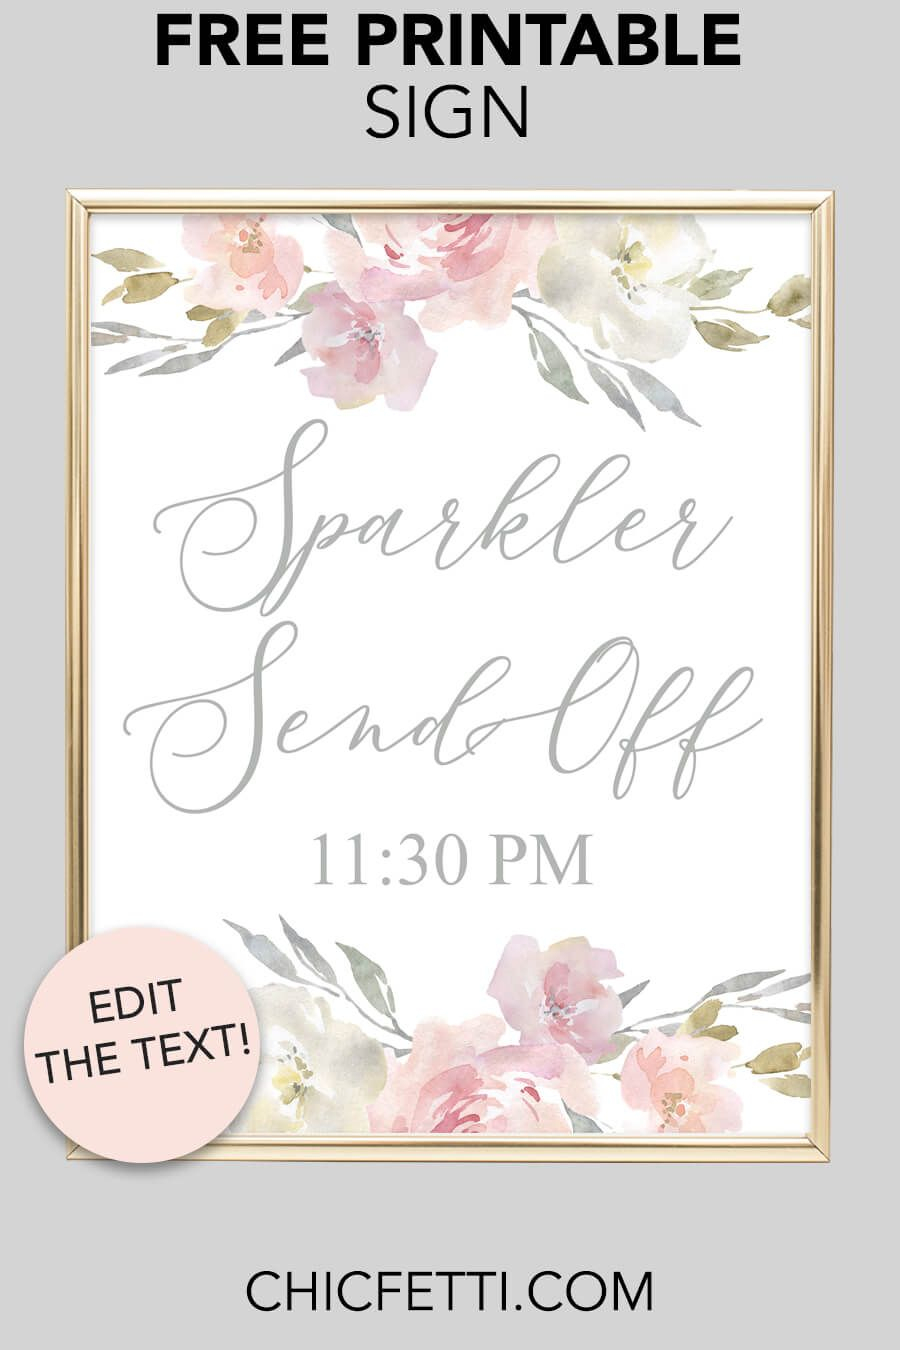 Sparkler Send Off Printable Sign (Blush Floral In 2018 | Free - Free Printable Wedding Sparkler Sign